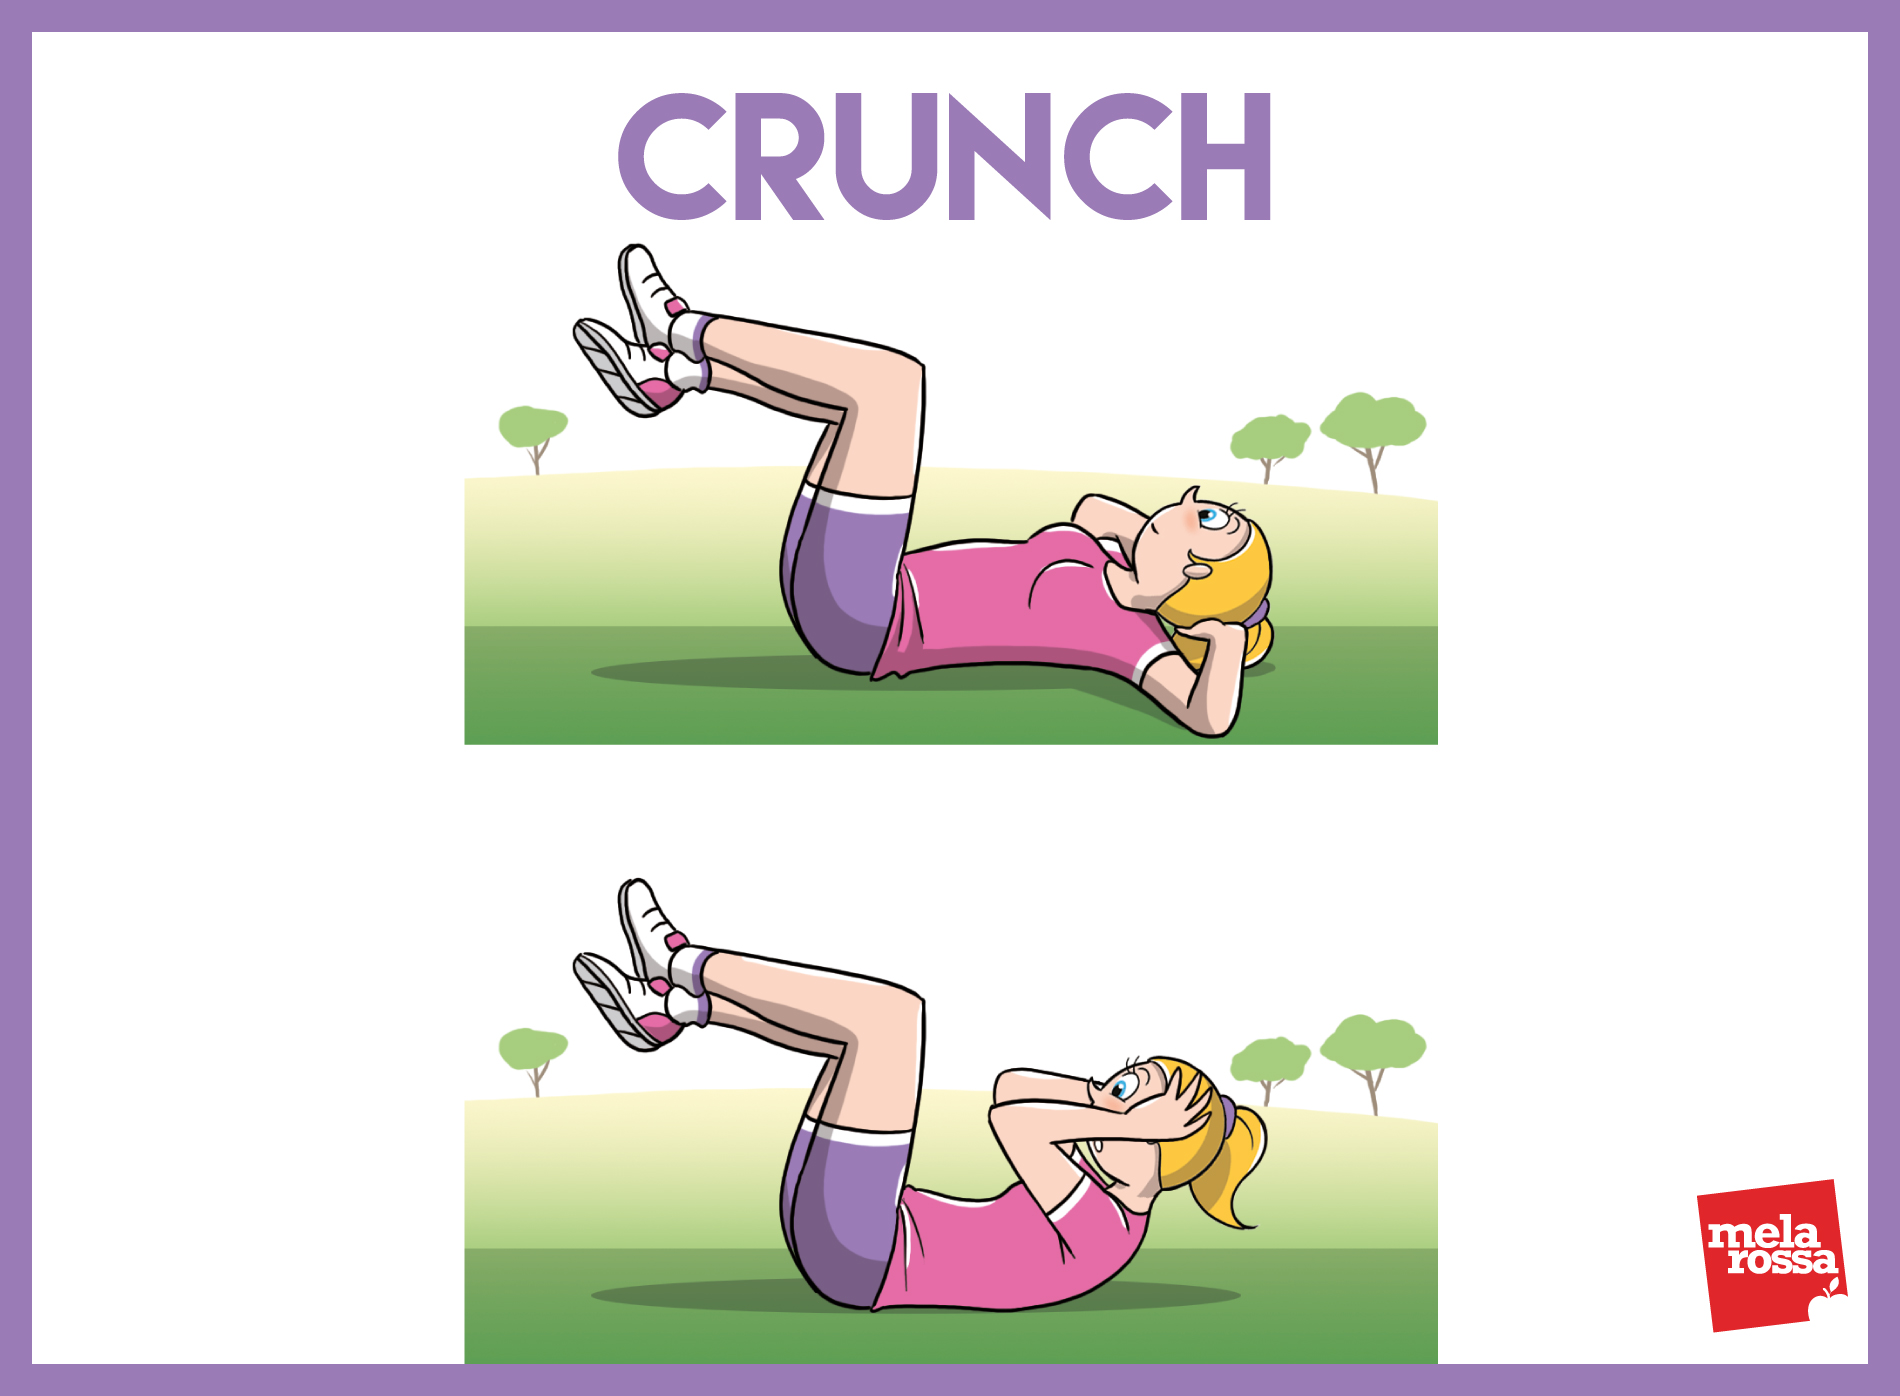 allenamento funzionale: crunch 